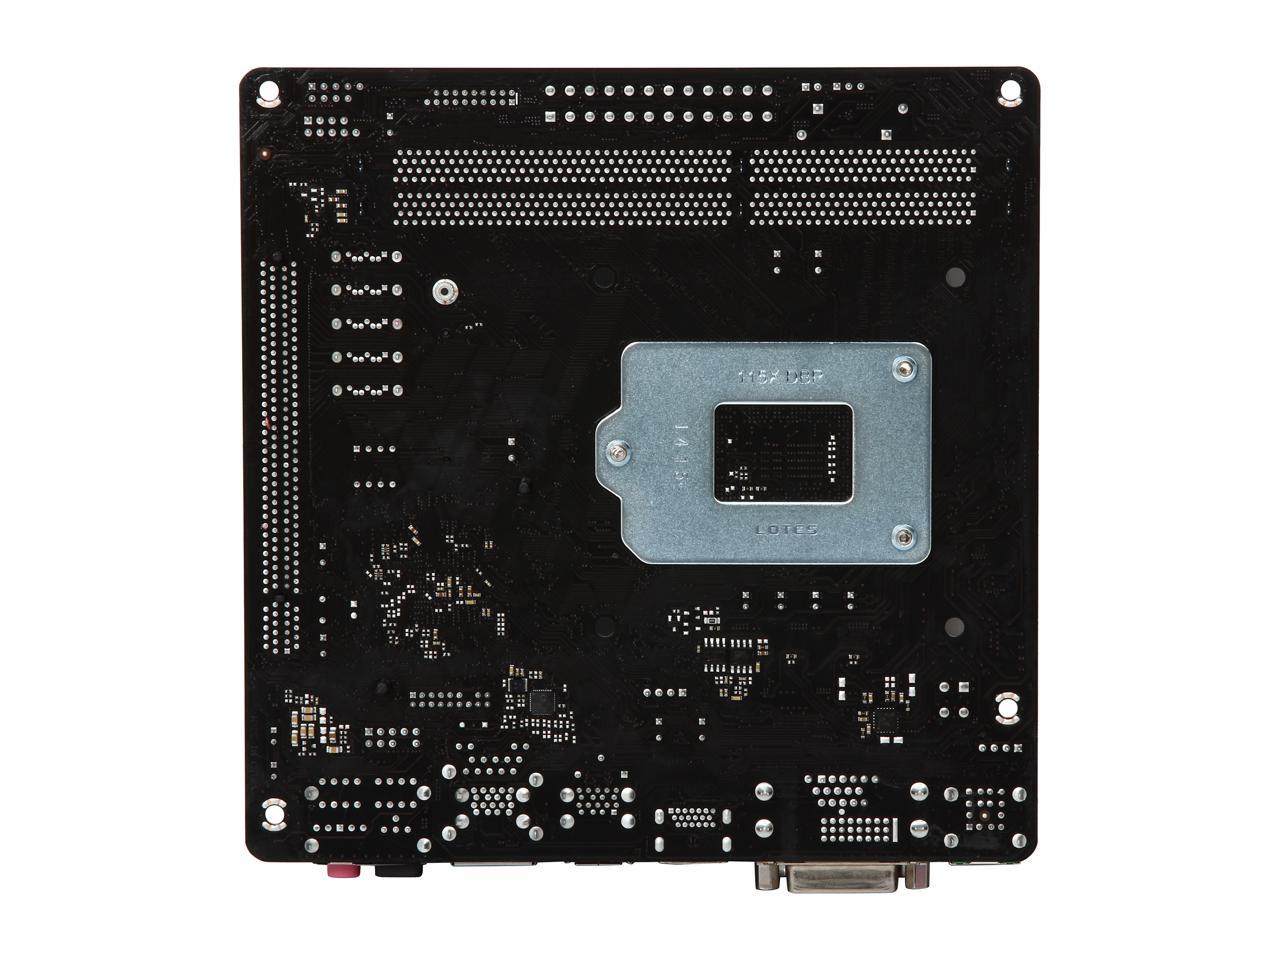 ASRock H97M-ITX/ac LGA 1150 Intel H97 HDMI SATA 6Gb/s USB 3.0 Mini ITX Intel Motherboard